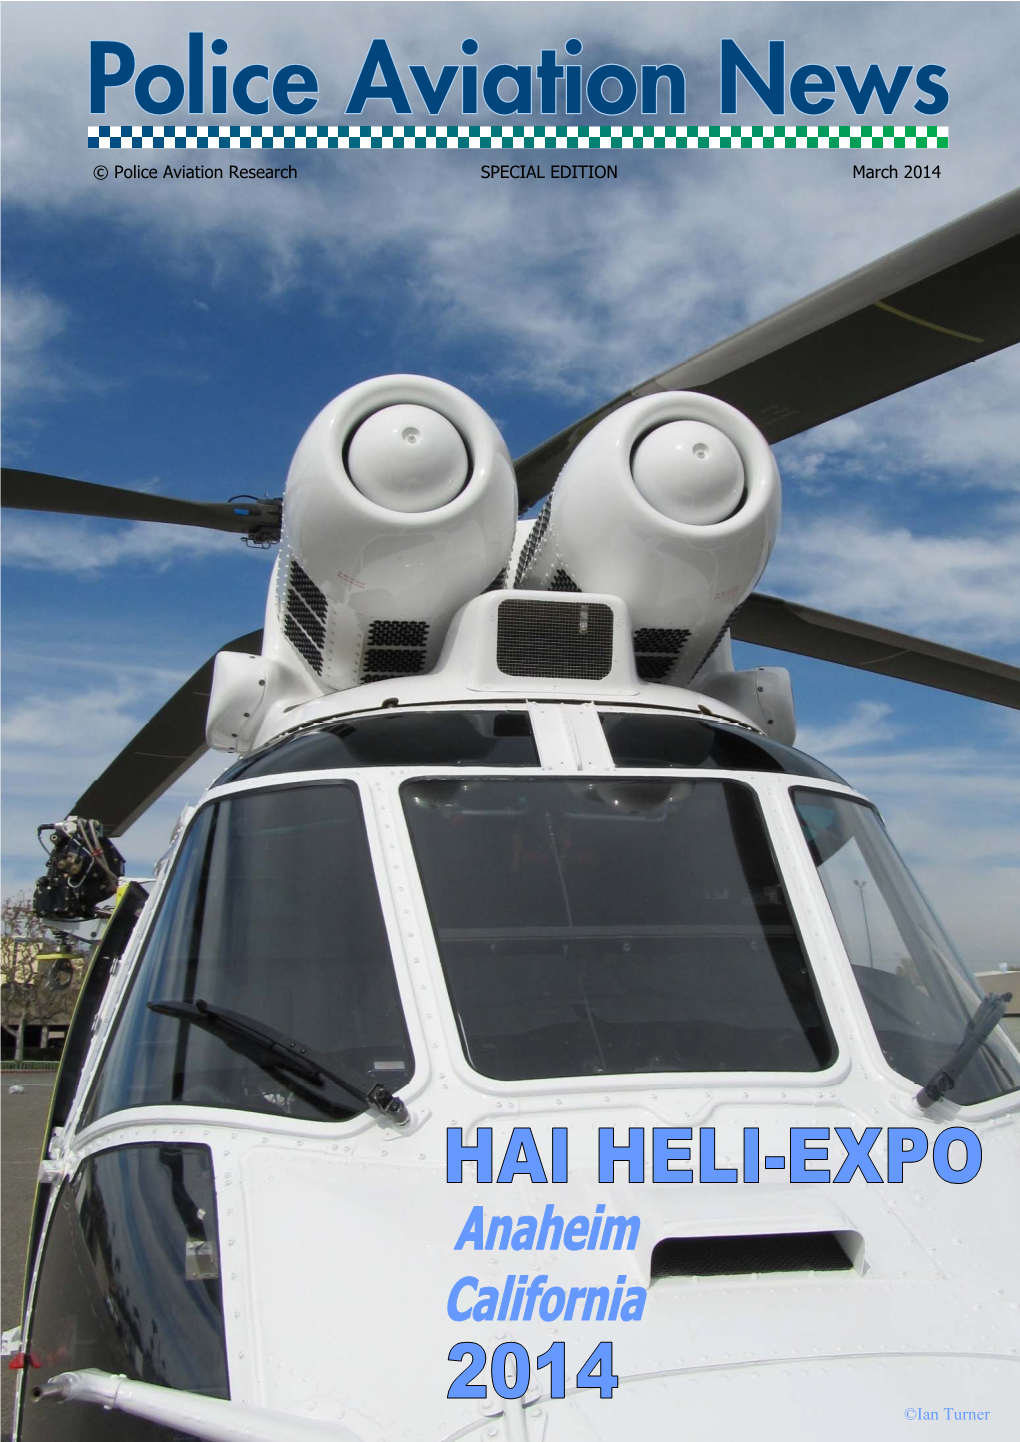 Heliexpo 2014 Report